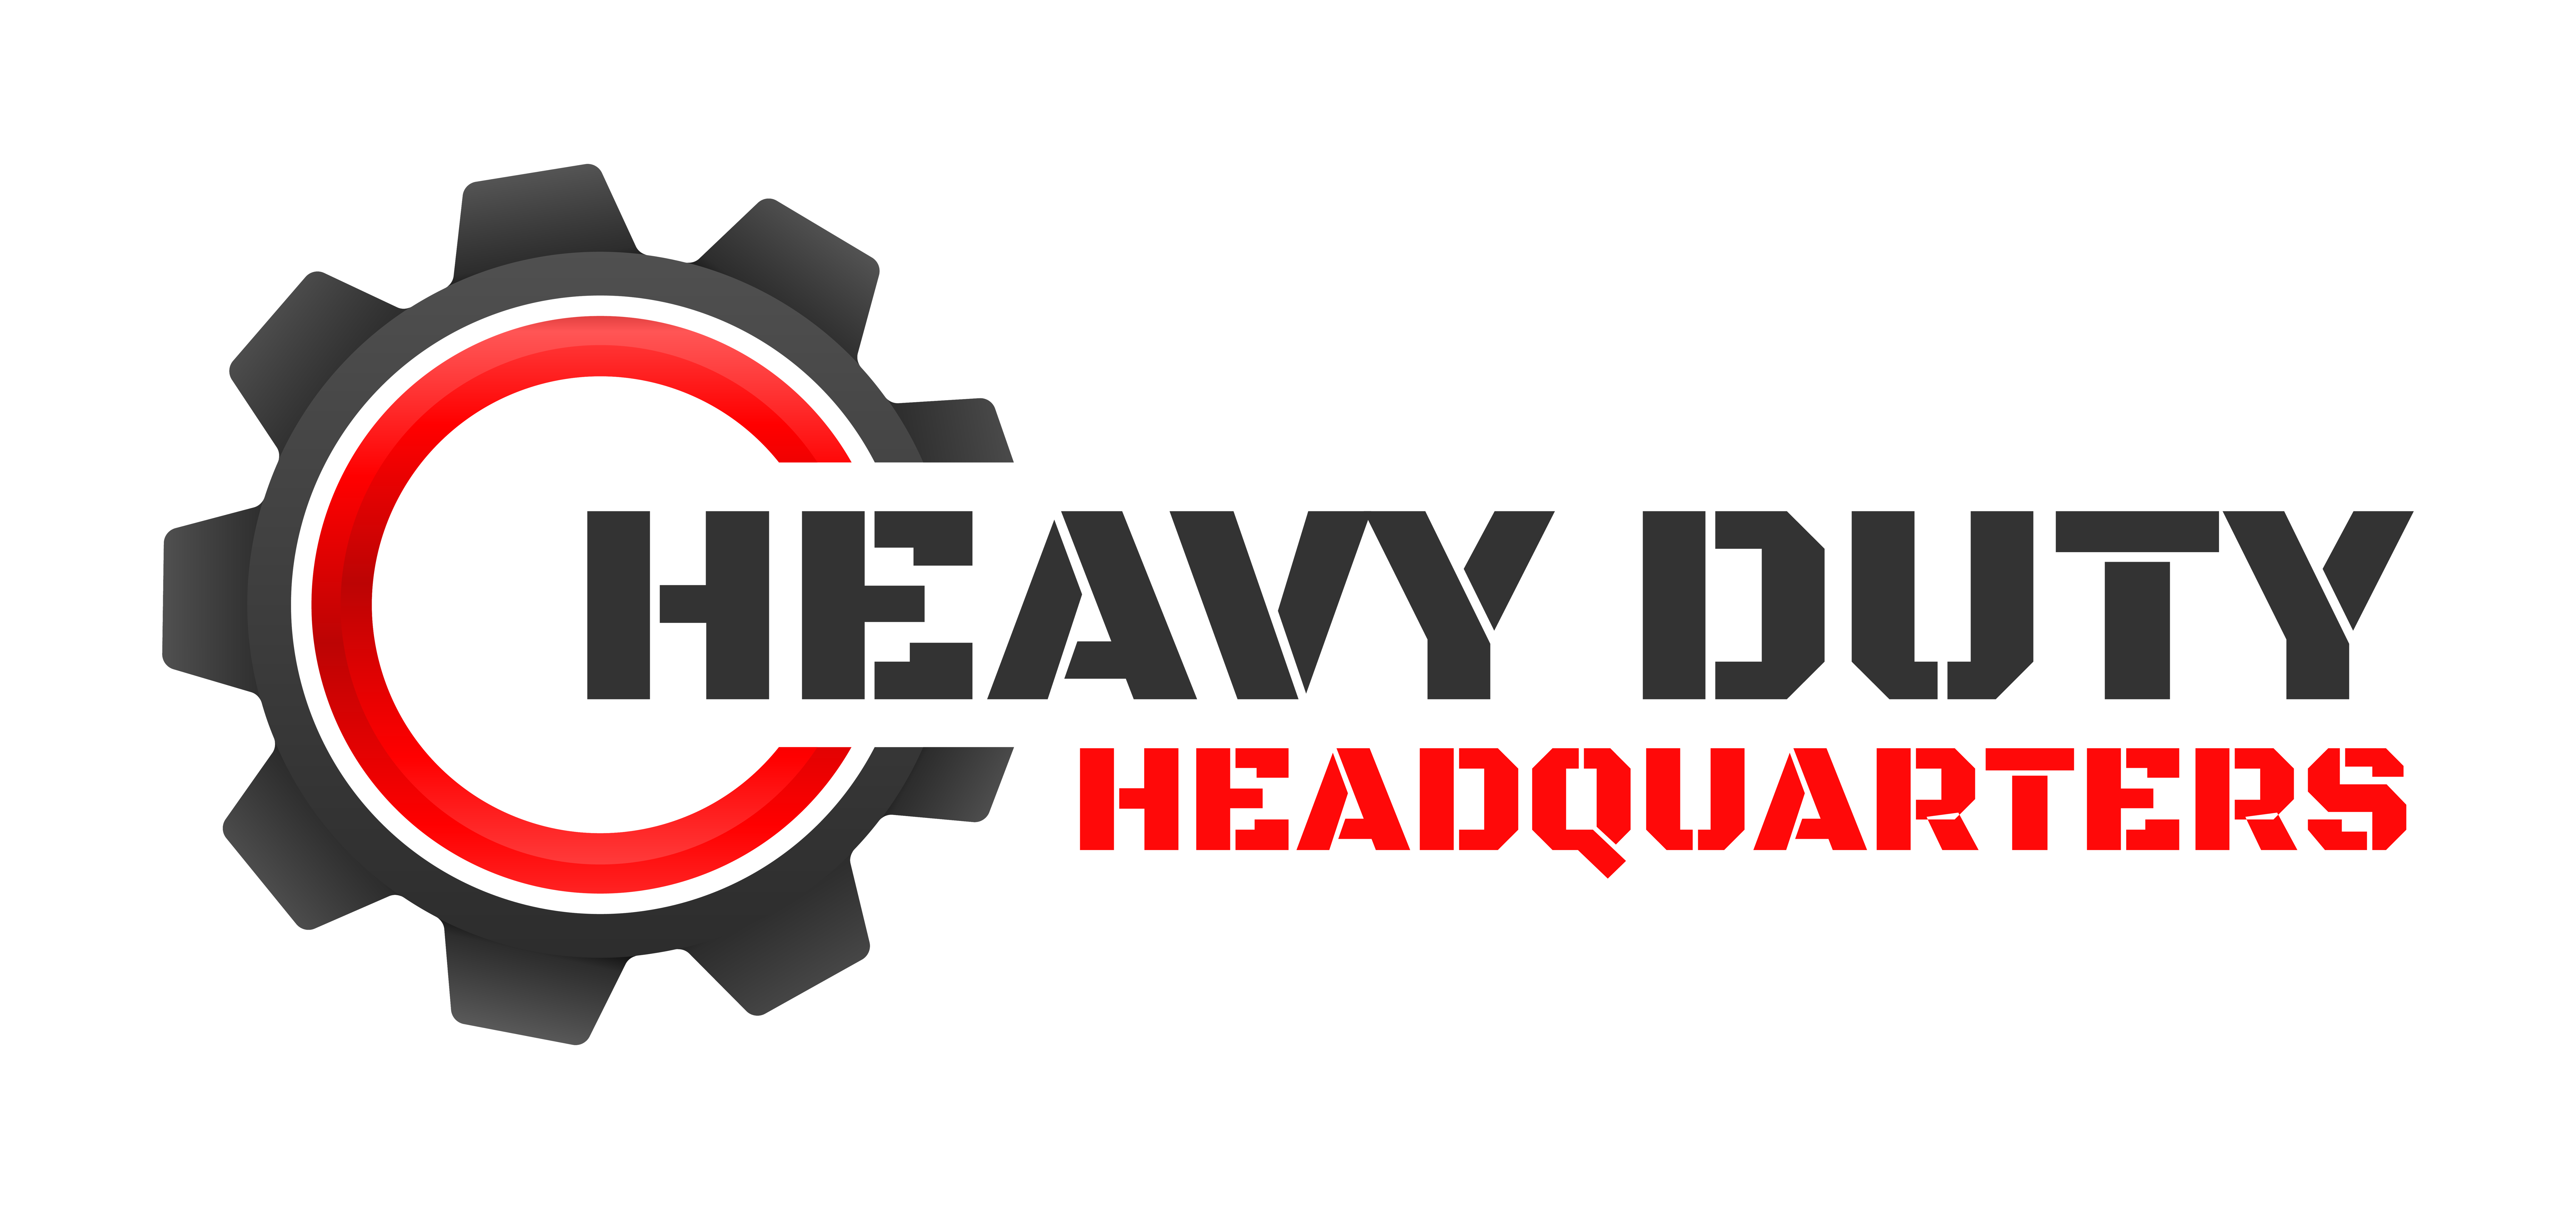 Home - Heavy Duty Headquarters